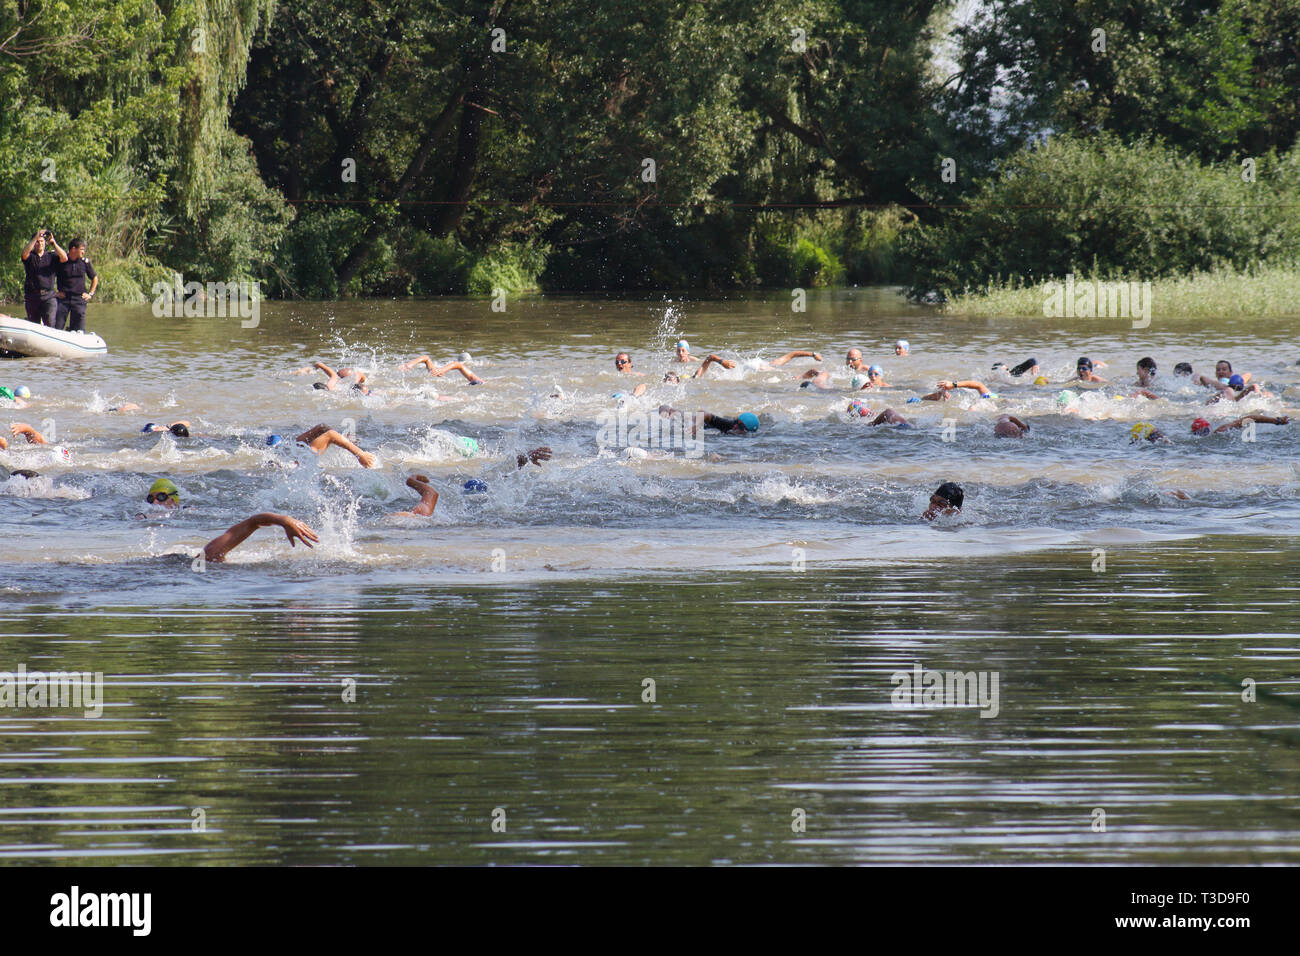 Groupe d'triathlonists la natation dans la rivière Mures au cours de la compétition nationale Banque D'Images